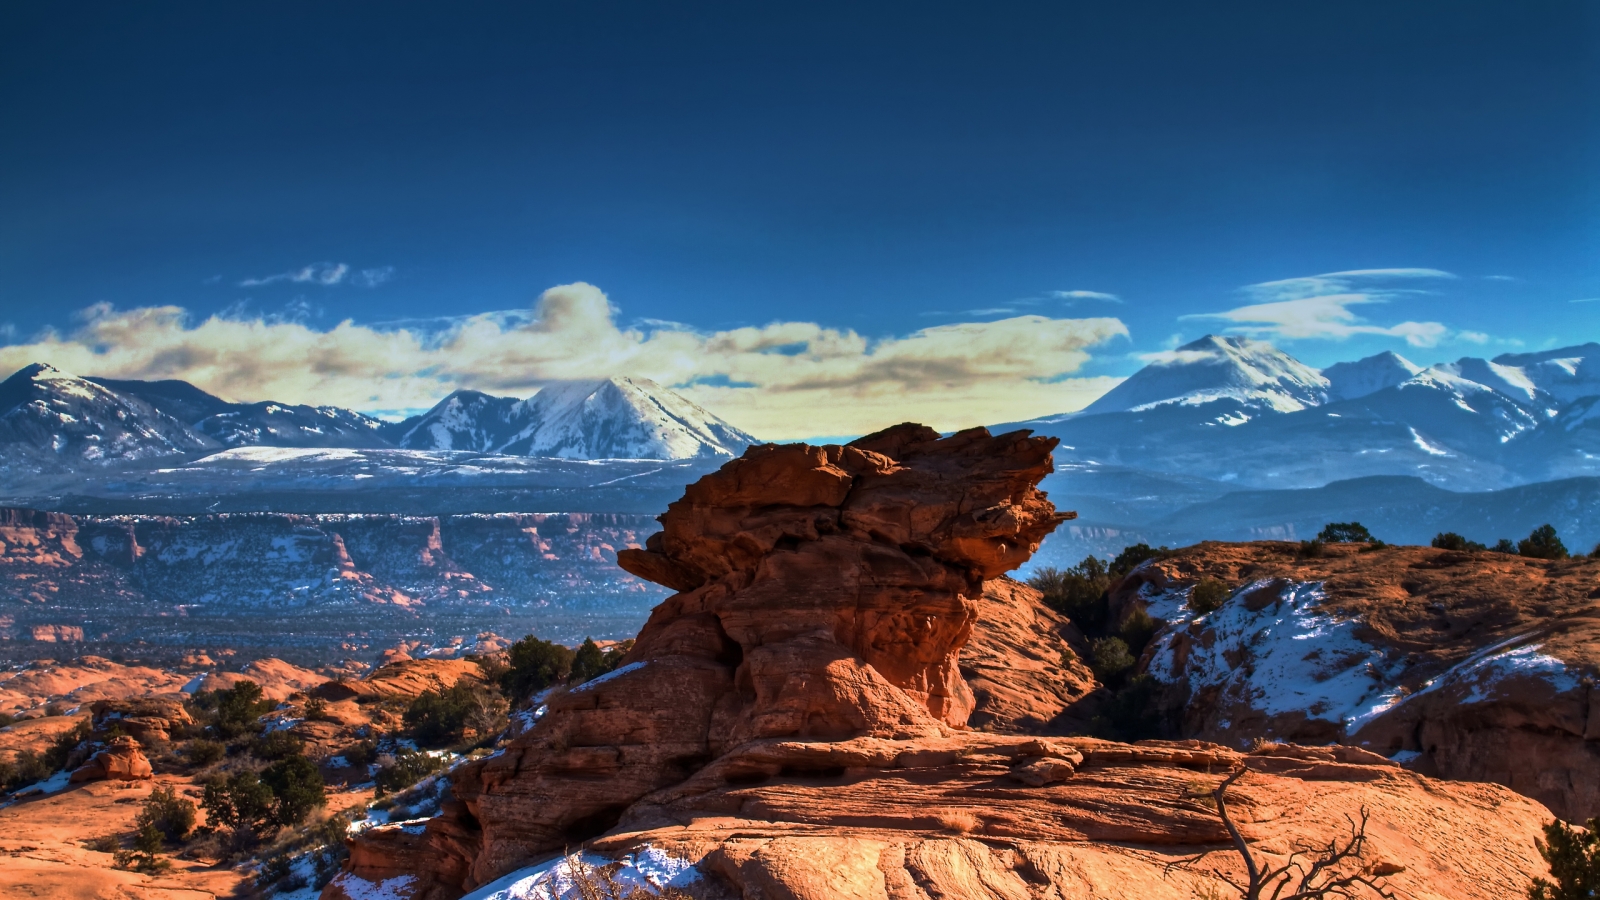 Moab Utah Mountains for 1600 x 900 HDTV resolution